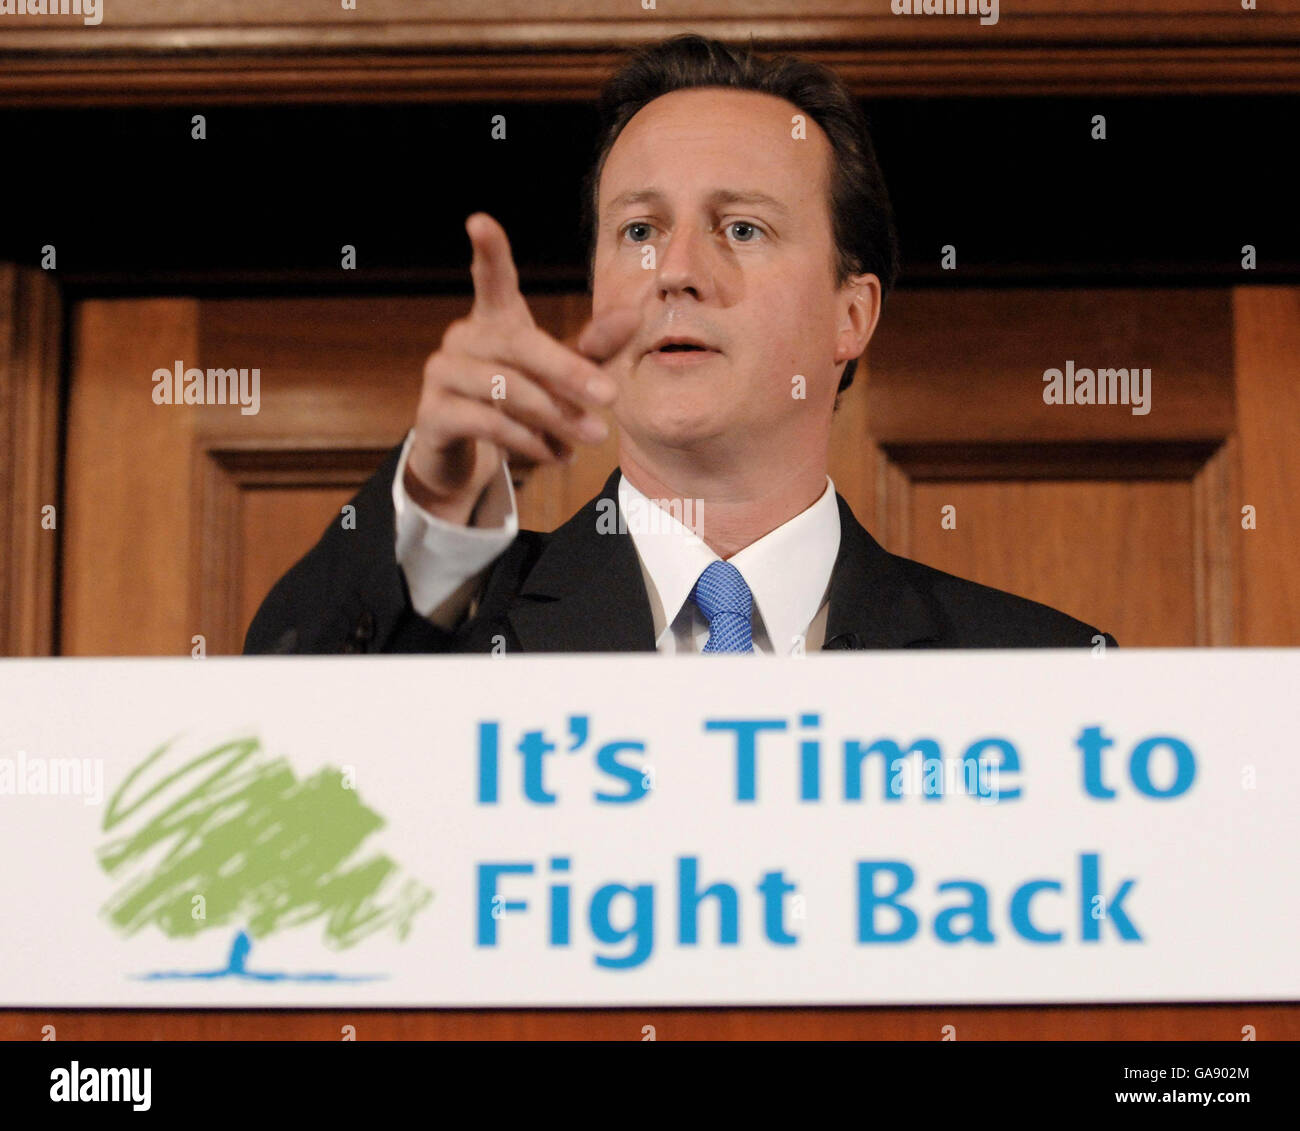 El líder conservador del Partido David Cameron durante una conferencia de prensa en Londres, donde reveló planes duros para enfrentar la "crisis del crimen" británica reforzando los poderes policiales y erradicando la violencia casual en la cultura popular. Foto de stock